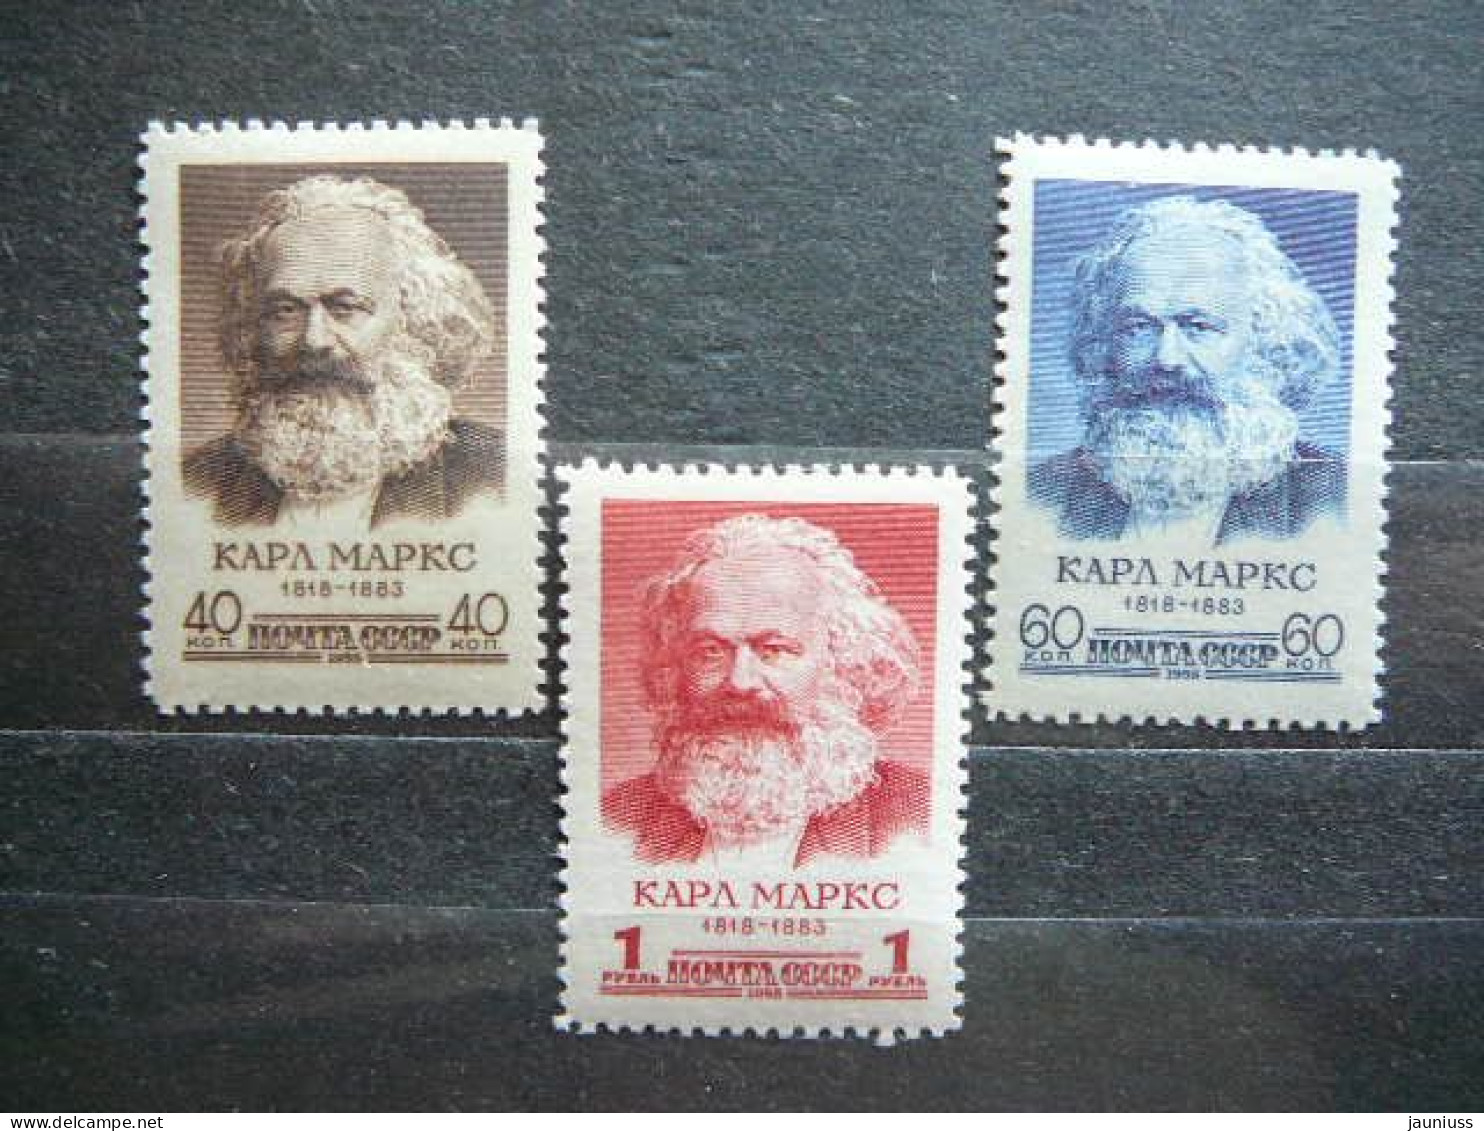 Karl Marx # Russia USSR Sowjetunion # 1958 MNH #Mi.2077/9 - Neufs